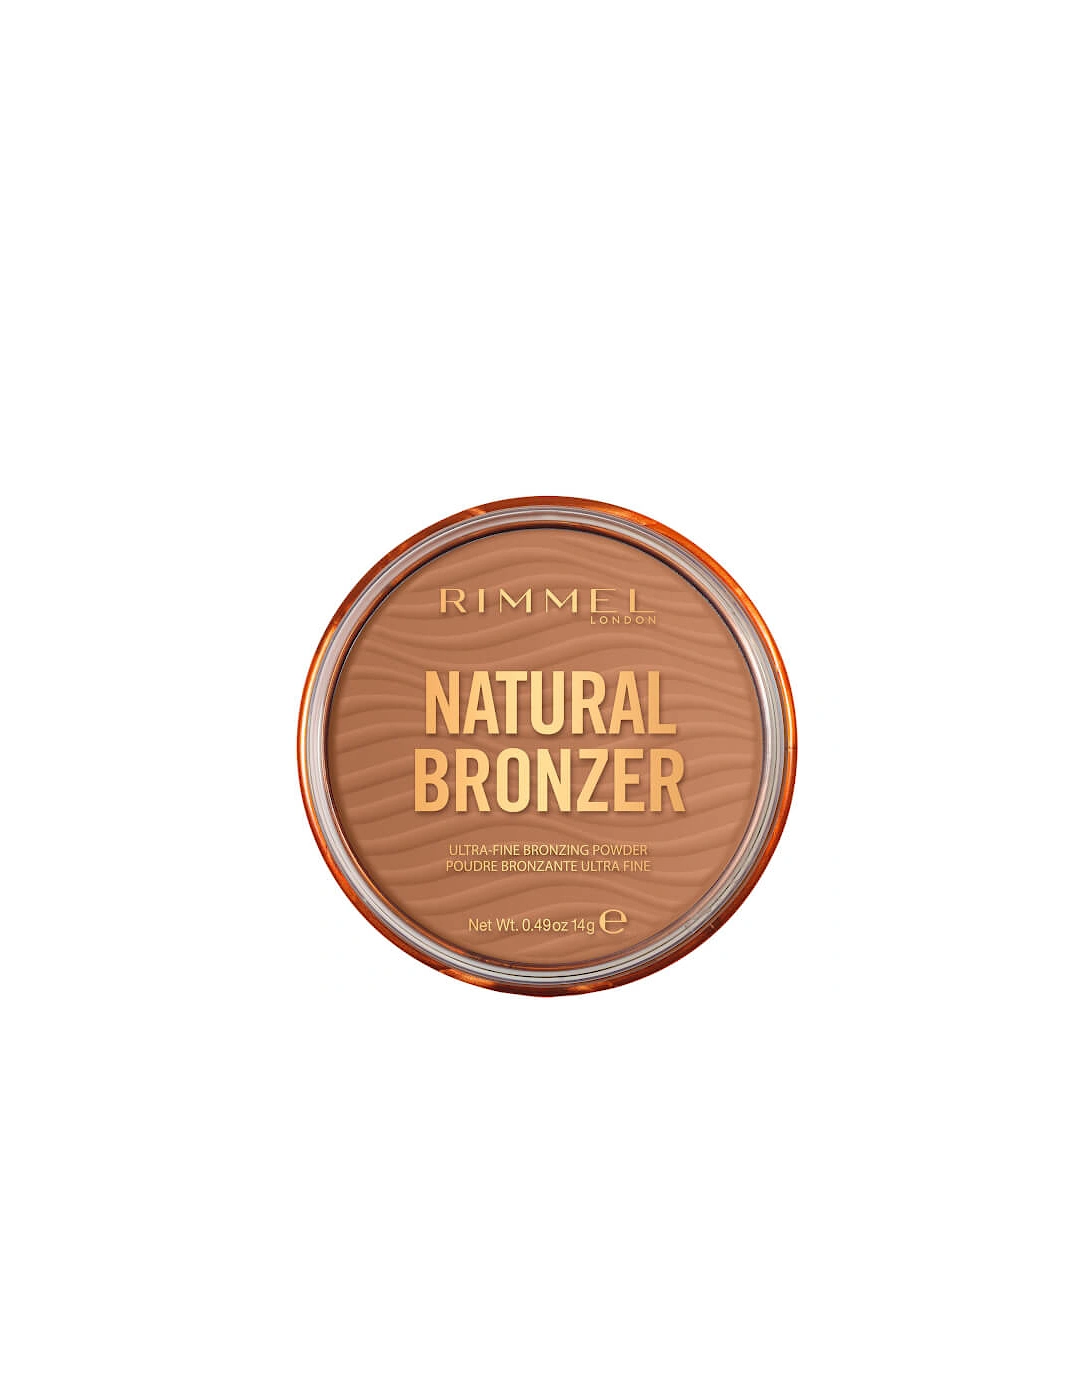 Natural Bronzer - 002 Sunbronze, 2 of 1